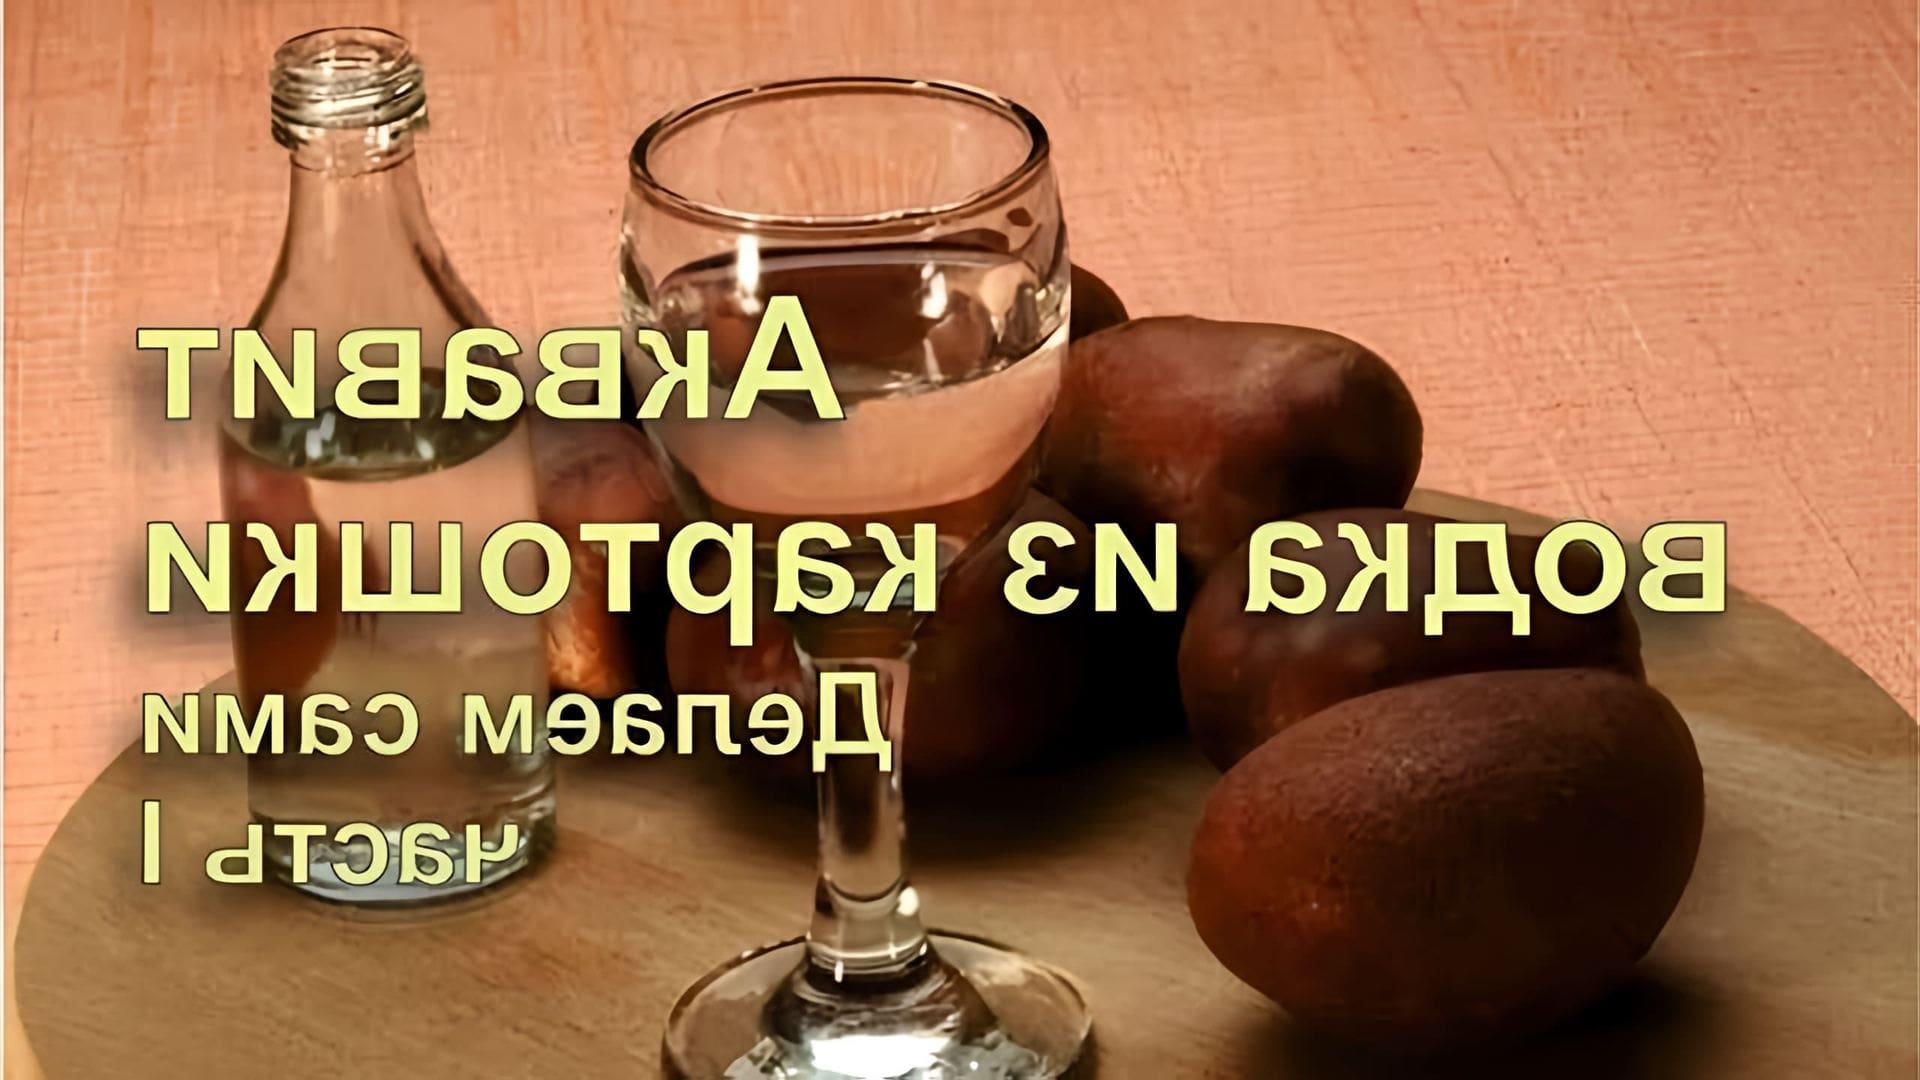 В данном видео демонстрируется процесс приготовления водки из картошки